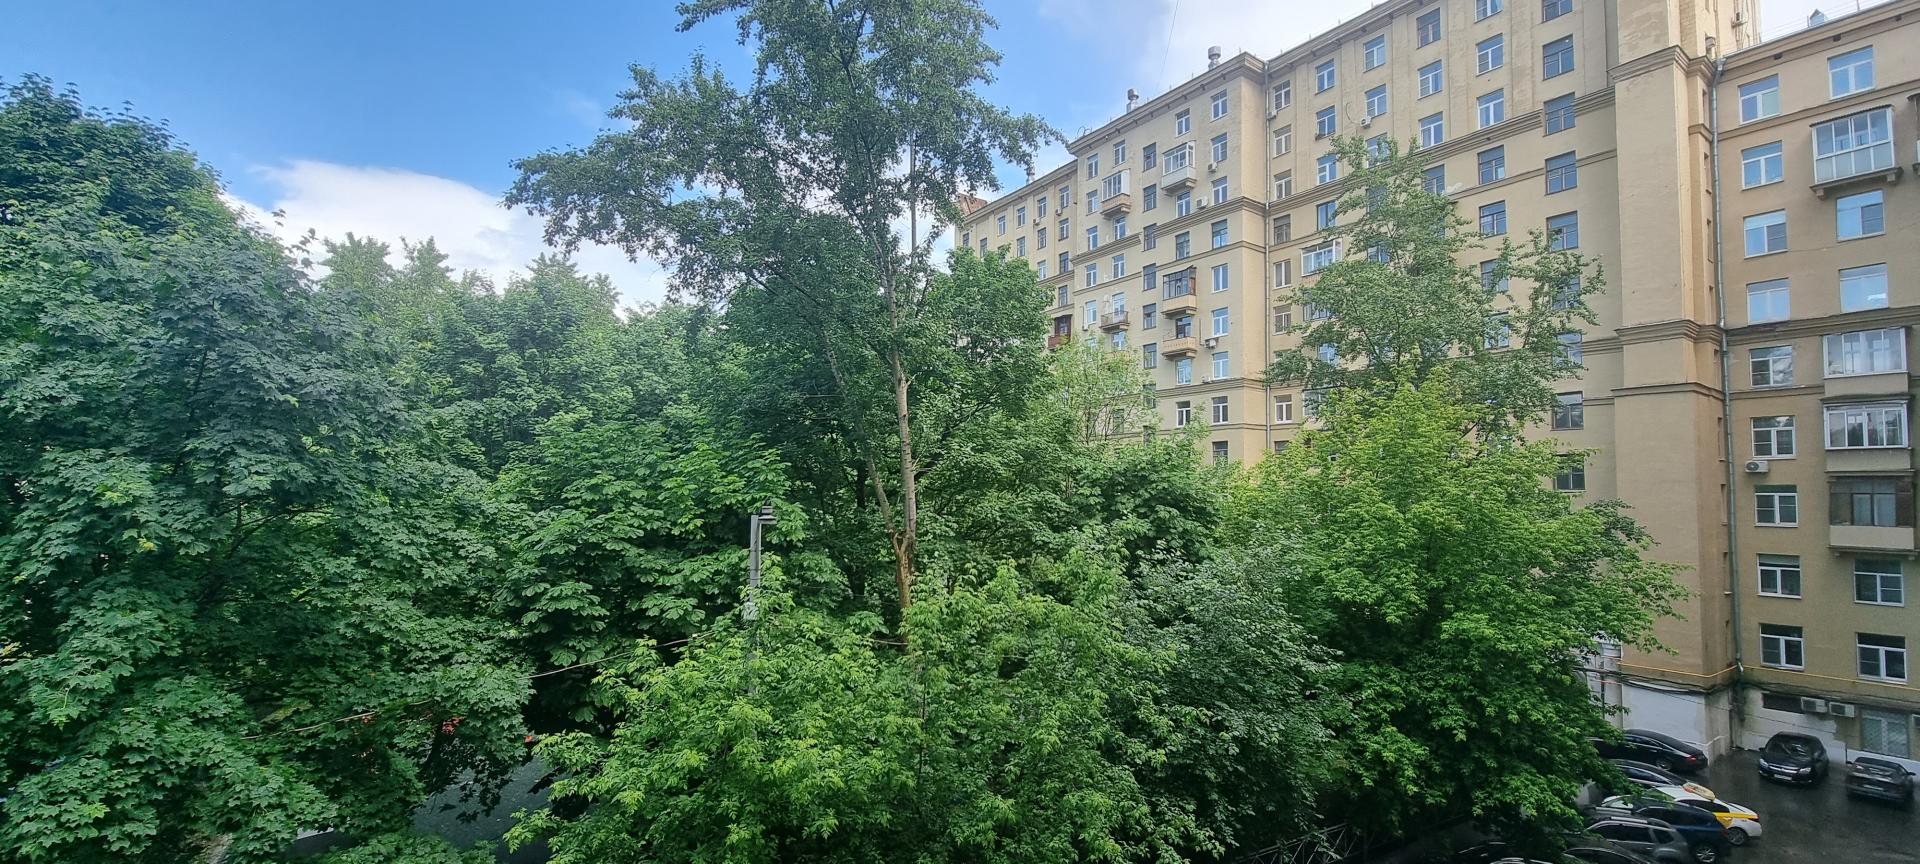 Продам квартиру в Москве по адресу Большой Матросский переулок, 1, площадь 72 квм Недвижимость Москва (Россия)  Хороший двор, новая детская и спортивная площадки, есть отдельная площадка для выгула собак